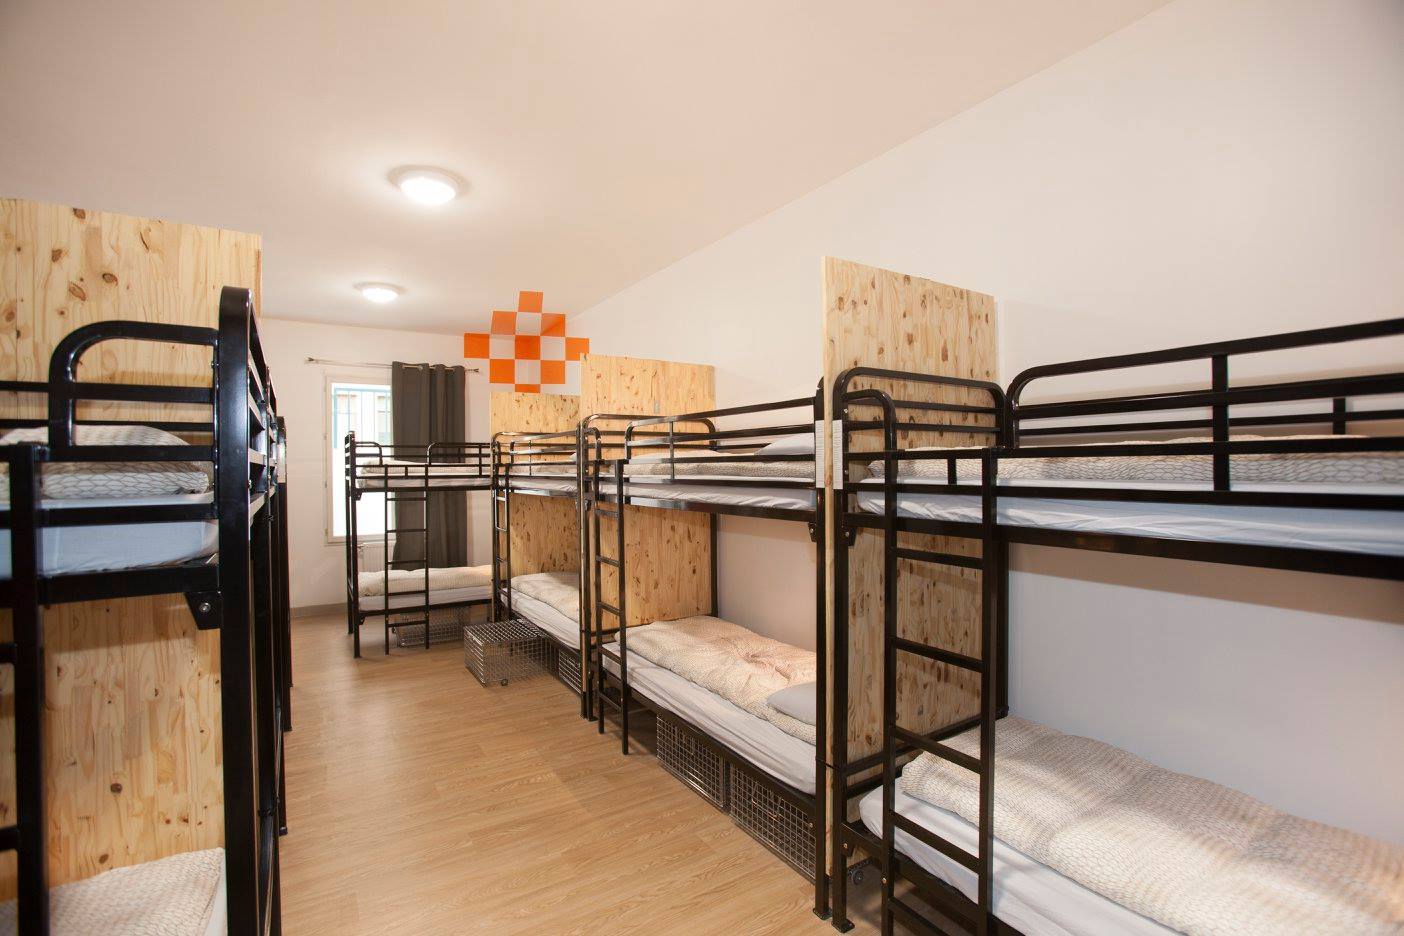 Hostel bunk bed manufacturer